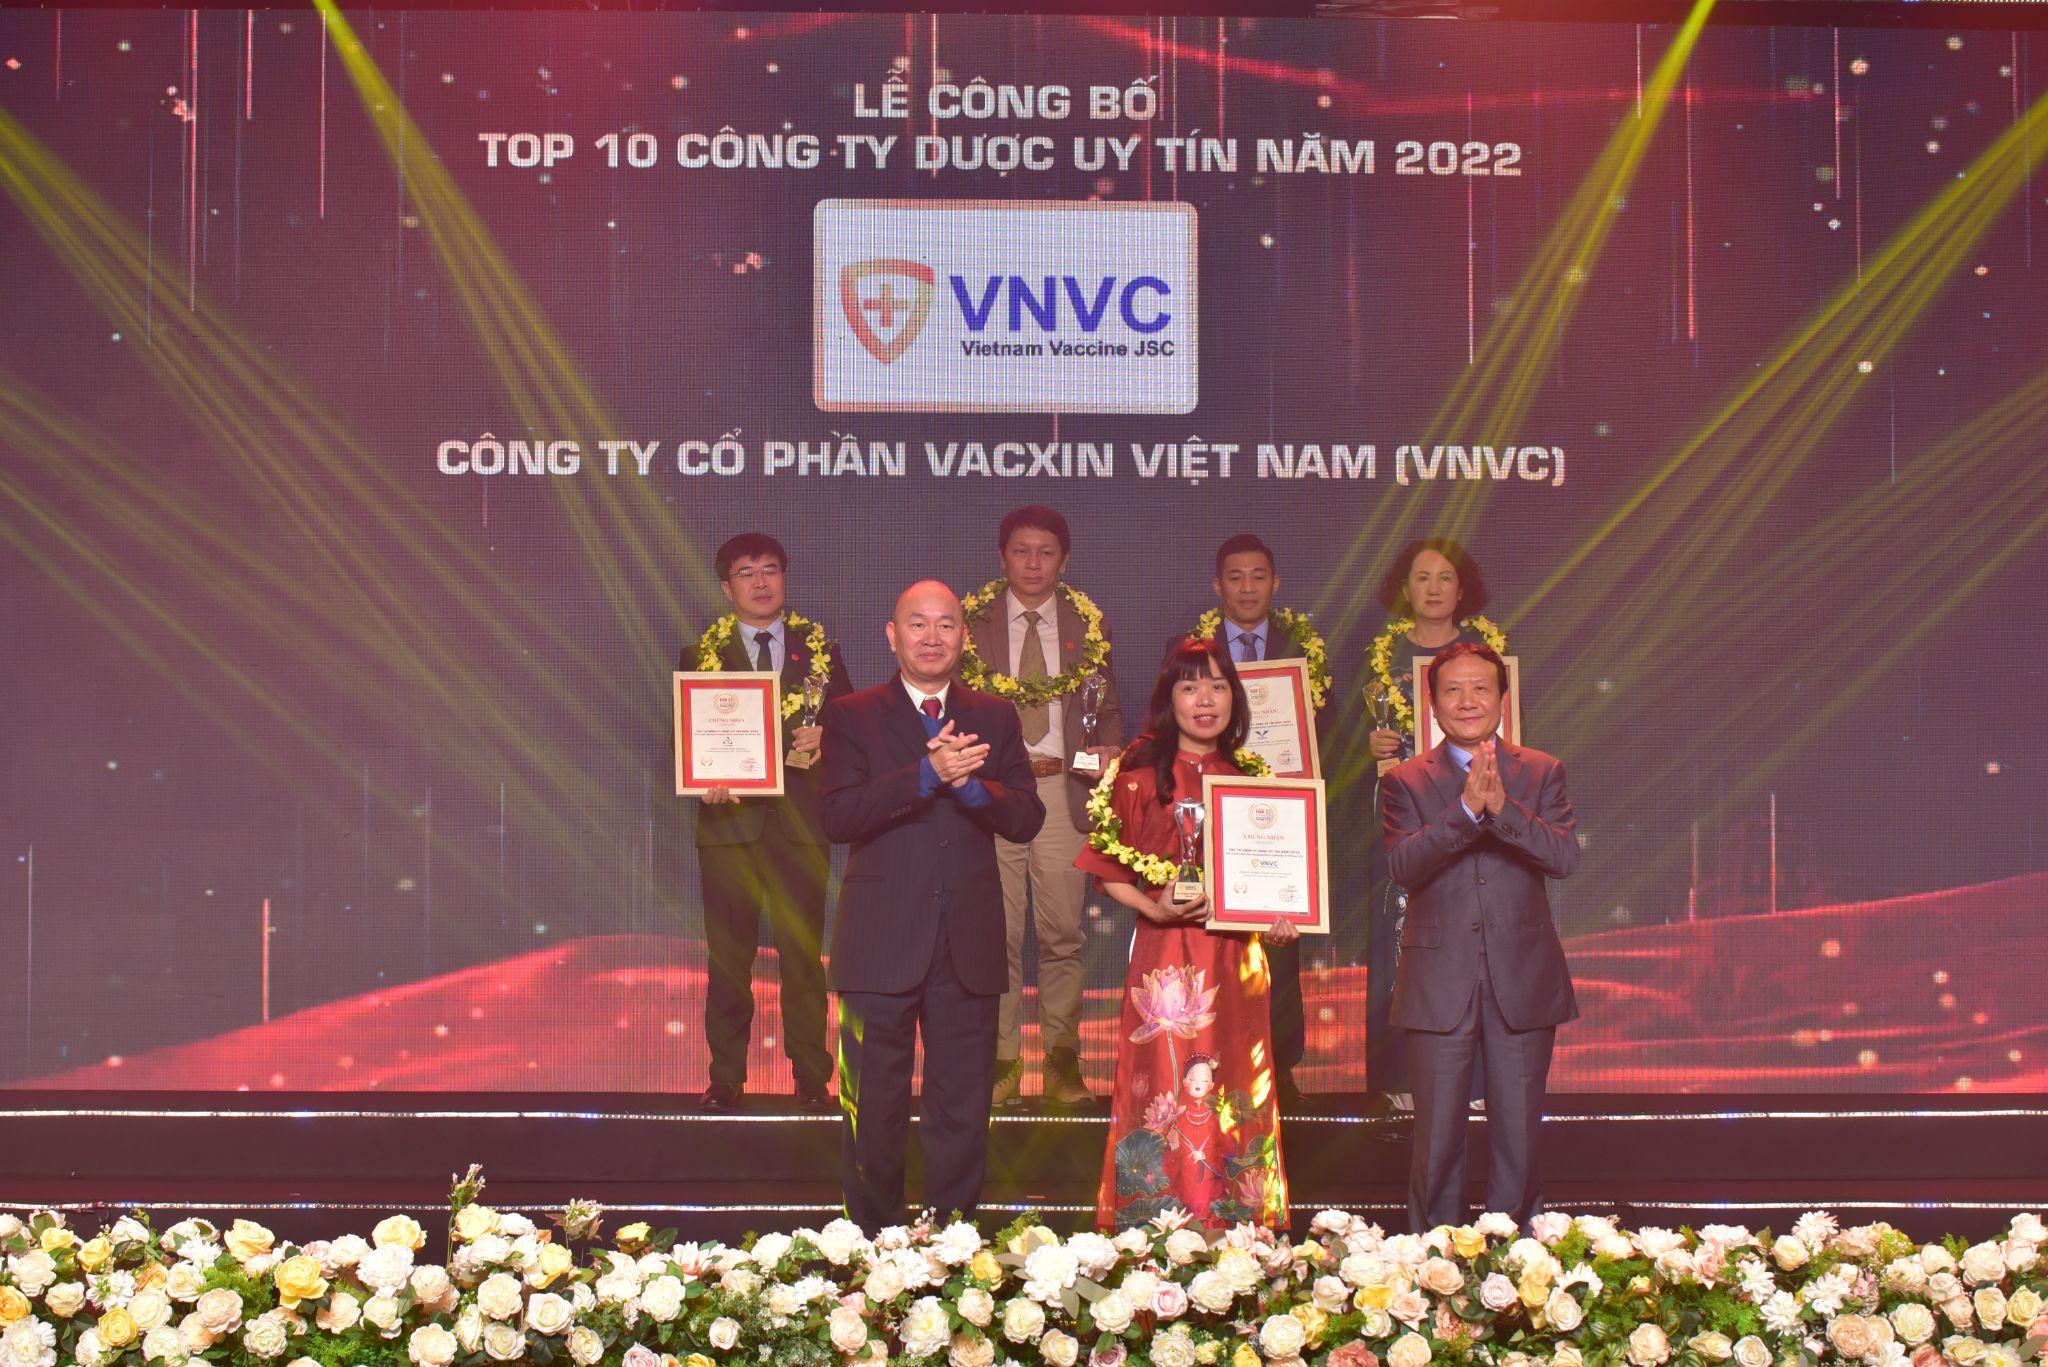 Hệ thống tiêm chủng VNVC được vinh danh công ty dược uy tín hàng đầu Việt Nam- Ảnh 1.